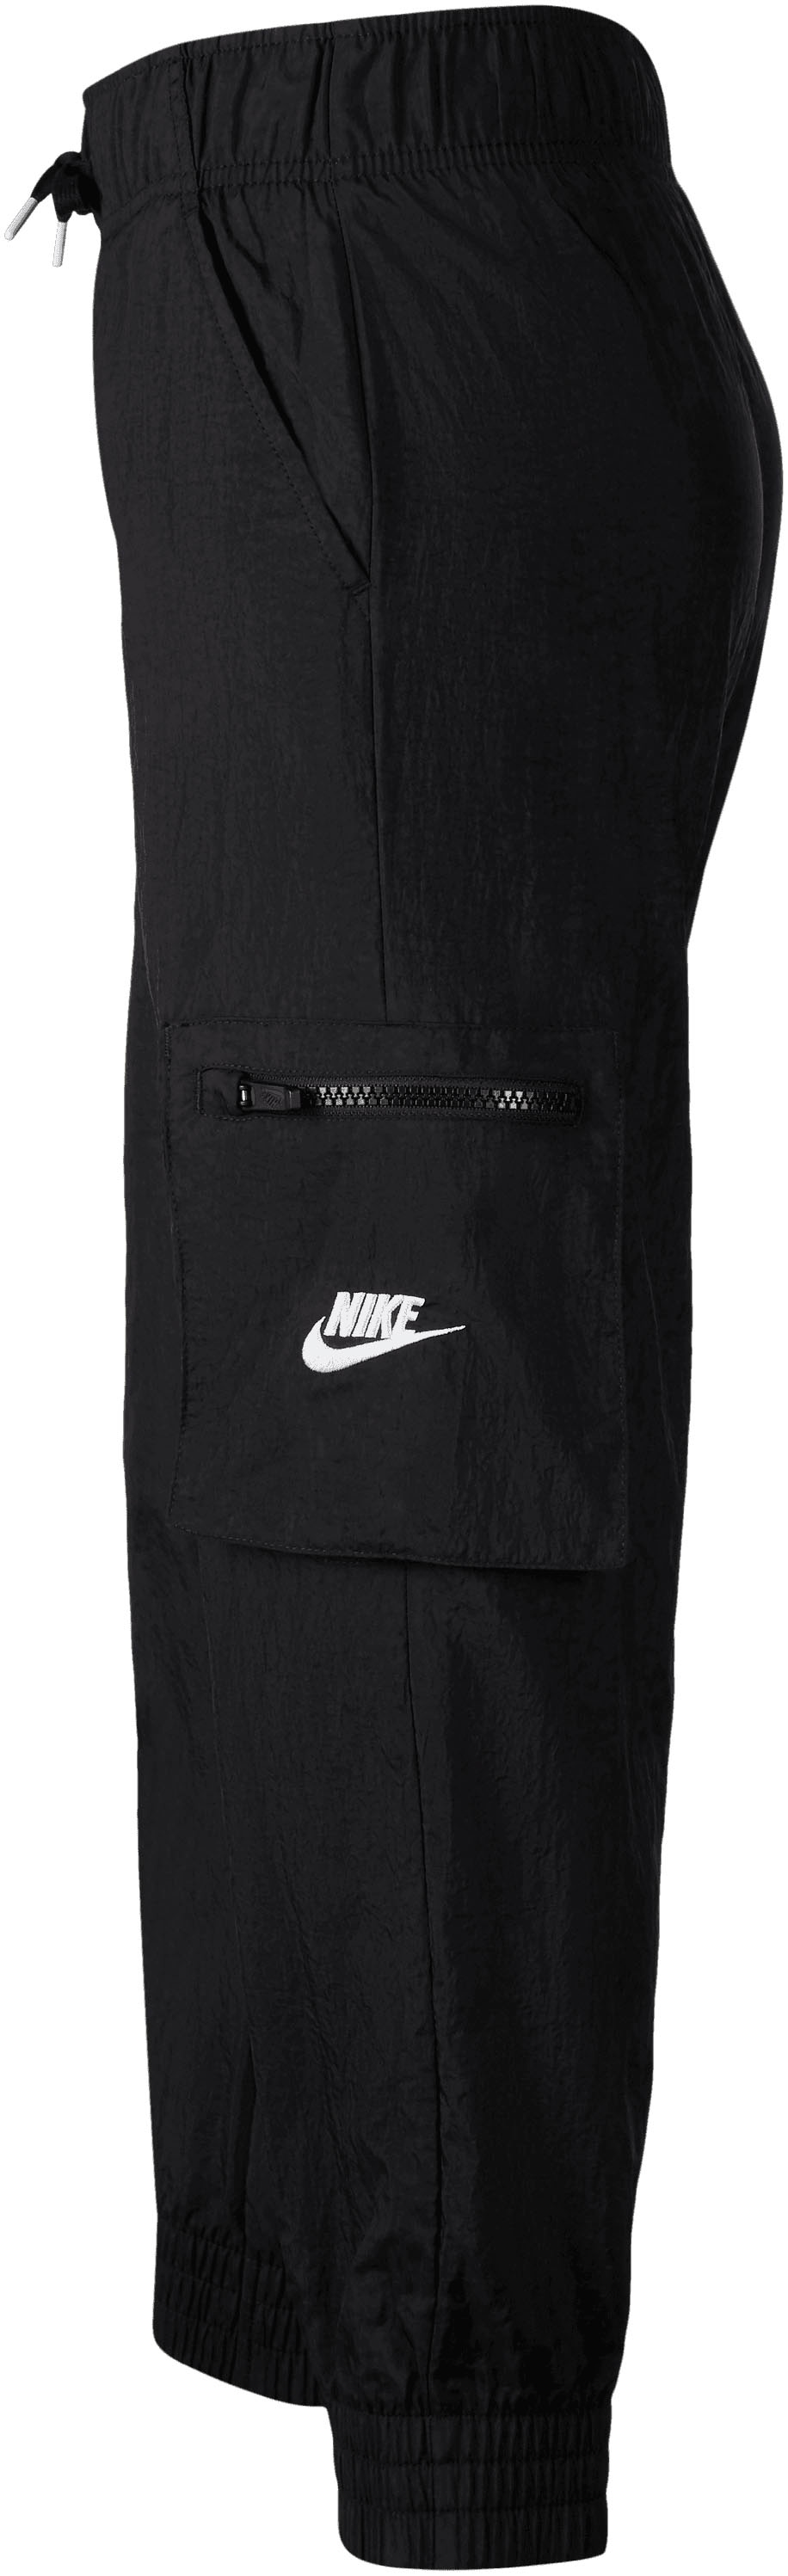 Nike Sportswear Sporthose »Big Kids\' bei Cargo (Girls\') Pants« Woven